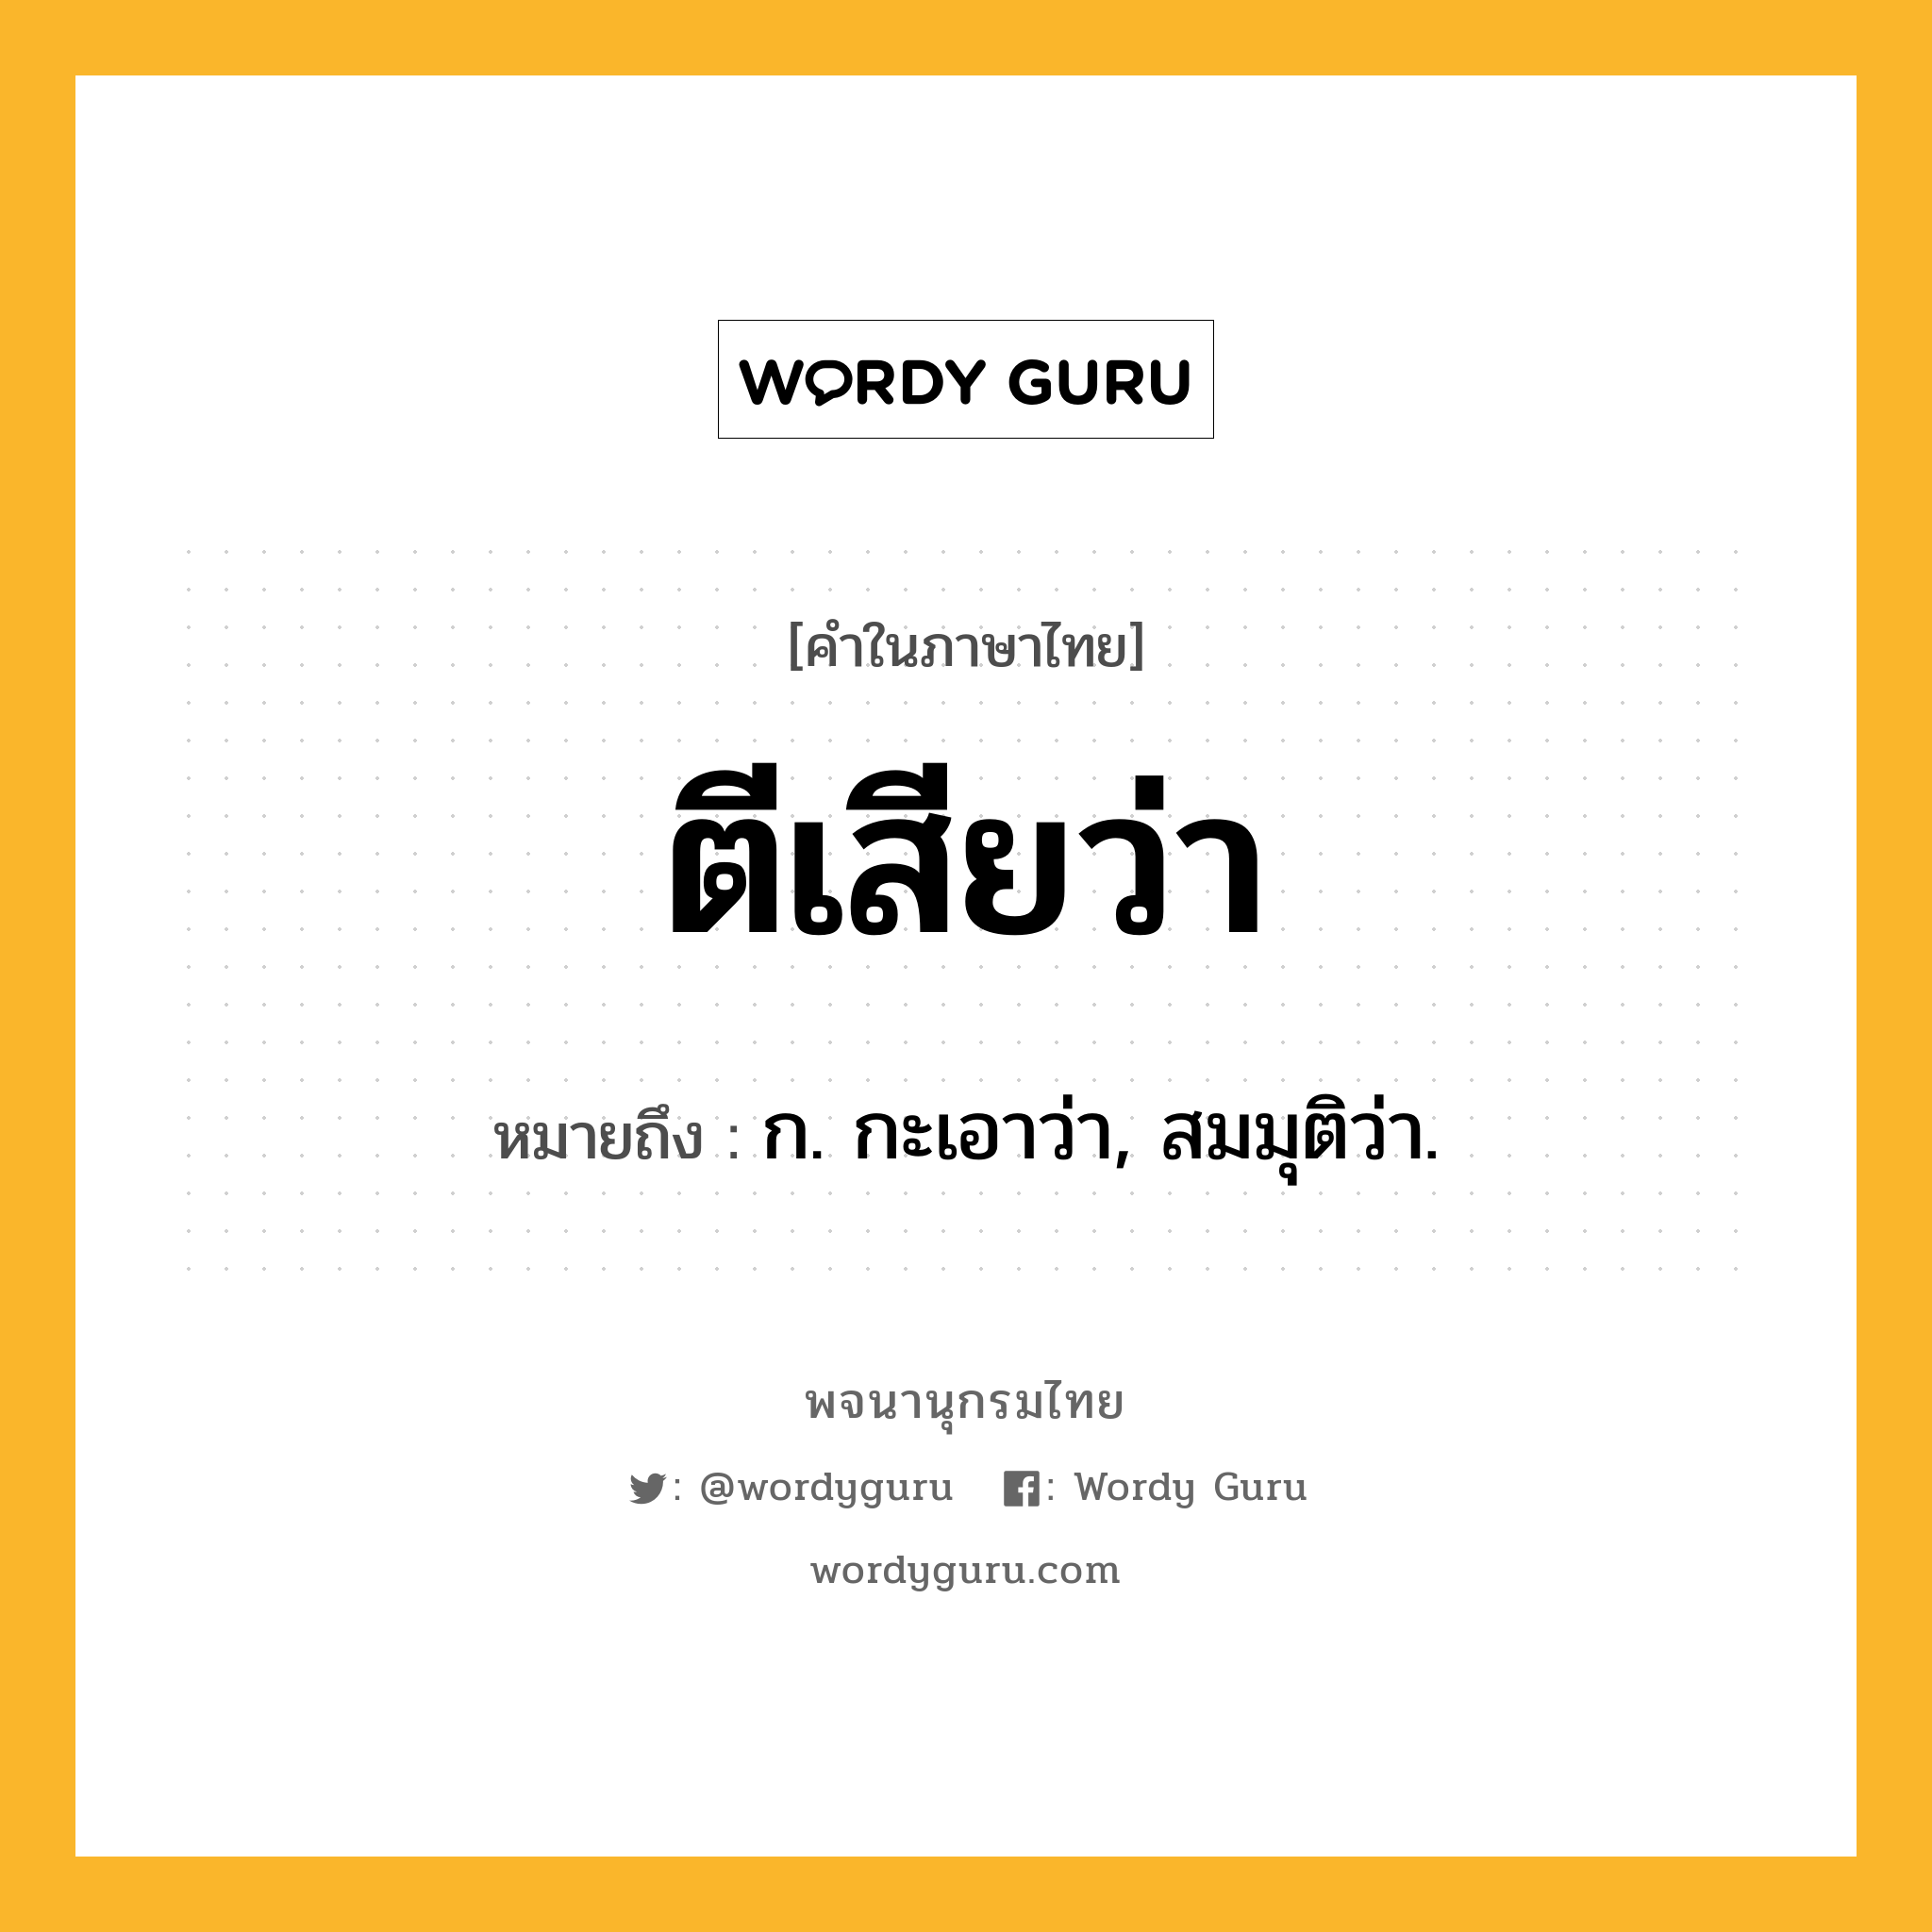 ตีเสียว่า หมายถึงอะไร?, คำในภาษาไทย ตีเสียว่า หมายถึง ก. กะเอาว่า, สมมุติว่า.